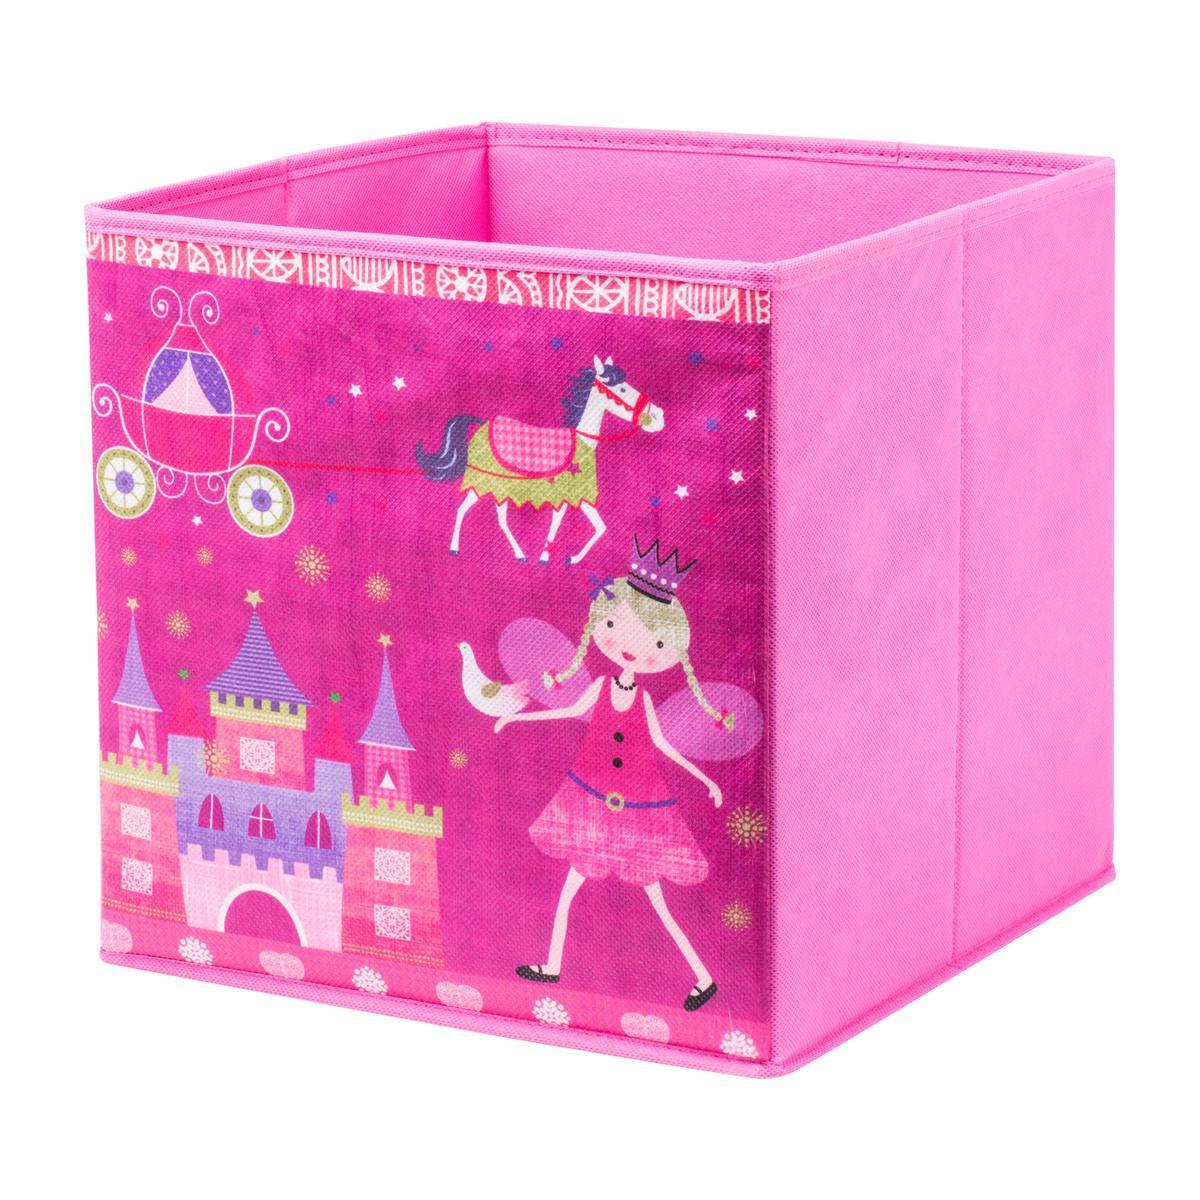 Cube de rangement princesses - Tissu non tissé - 28 x 28 x H 28 cm - Rose